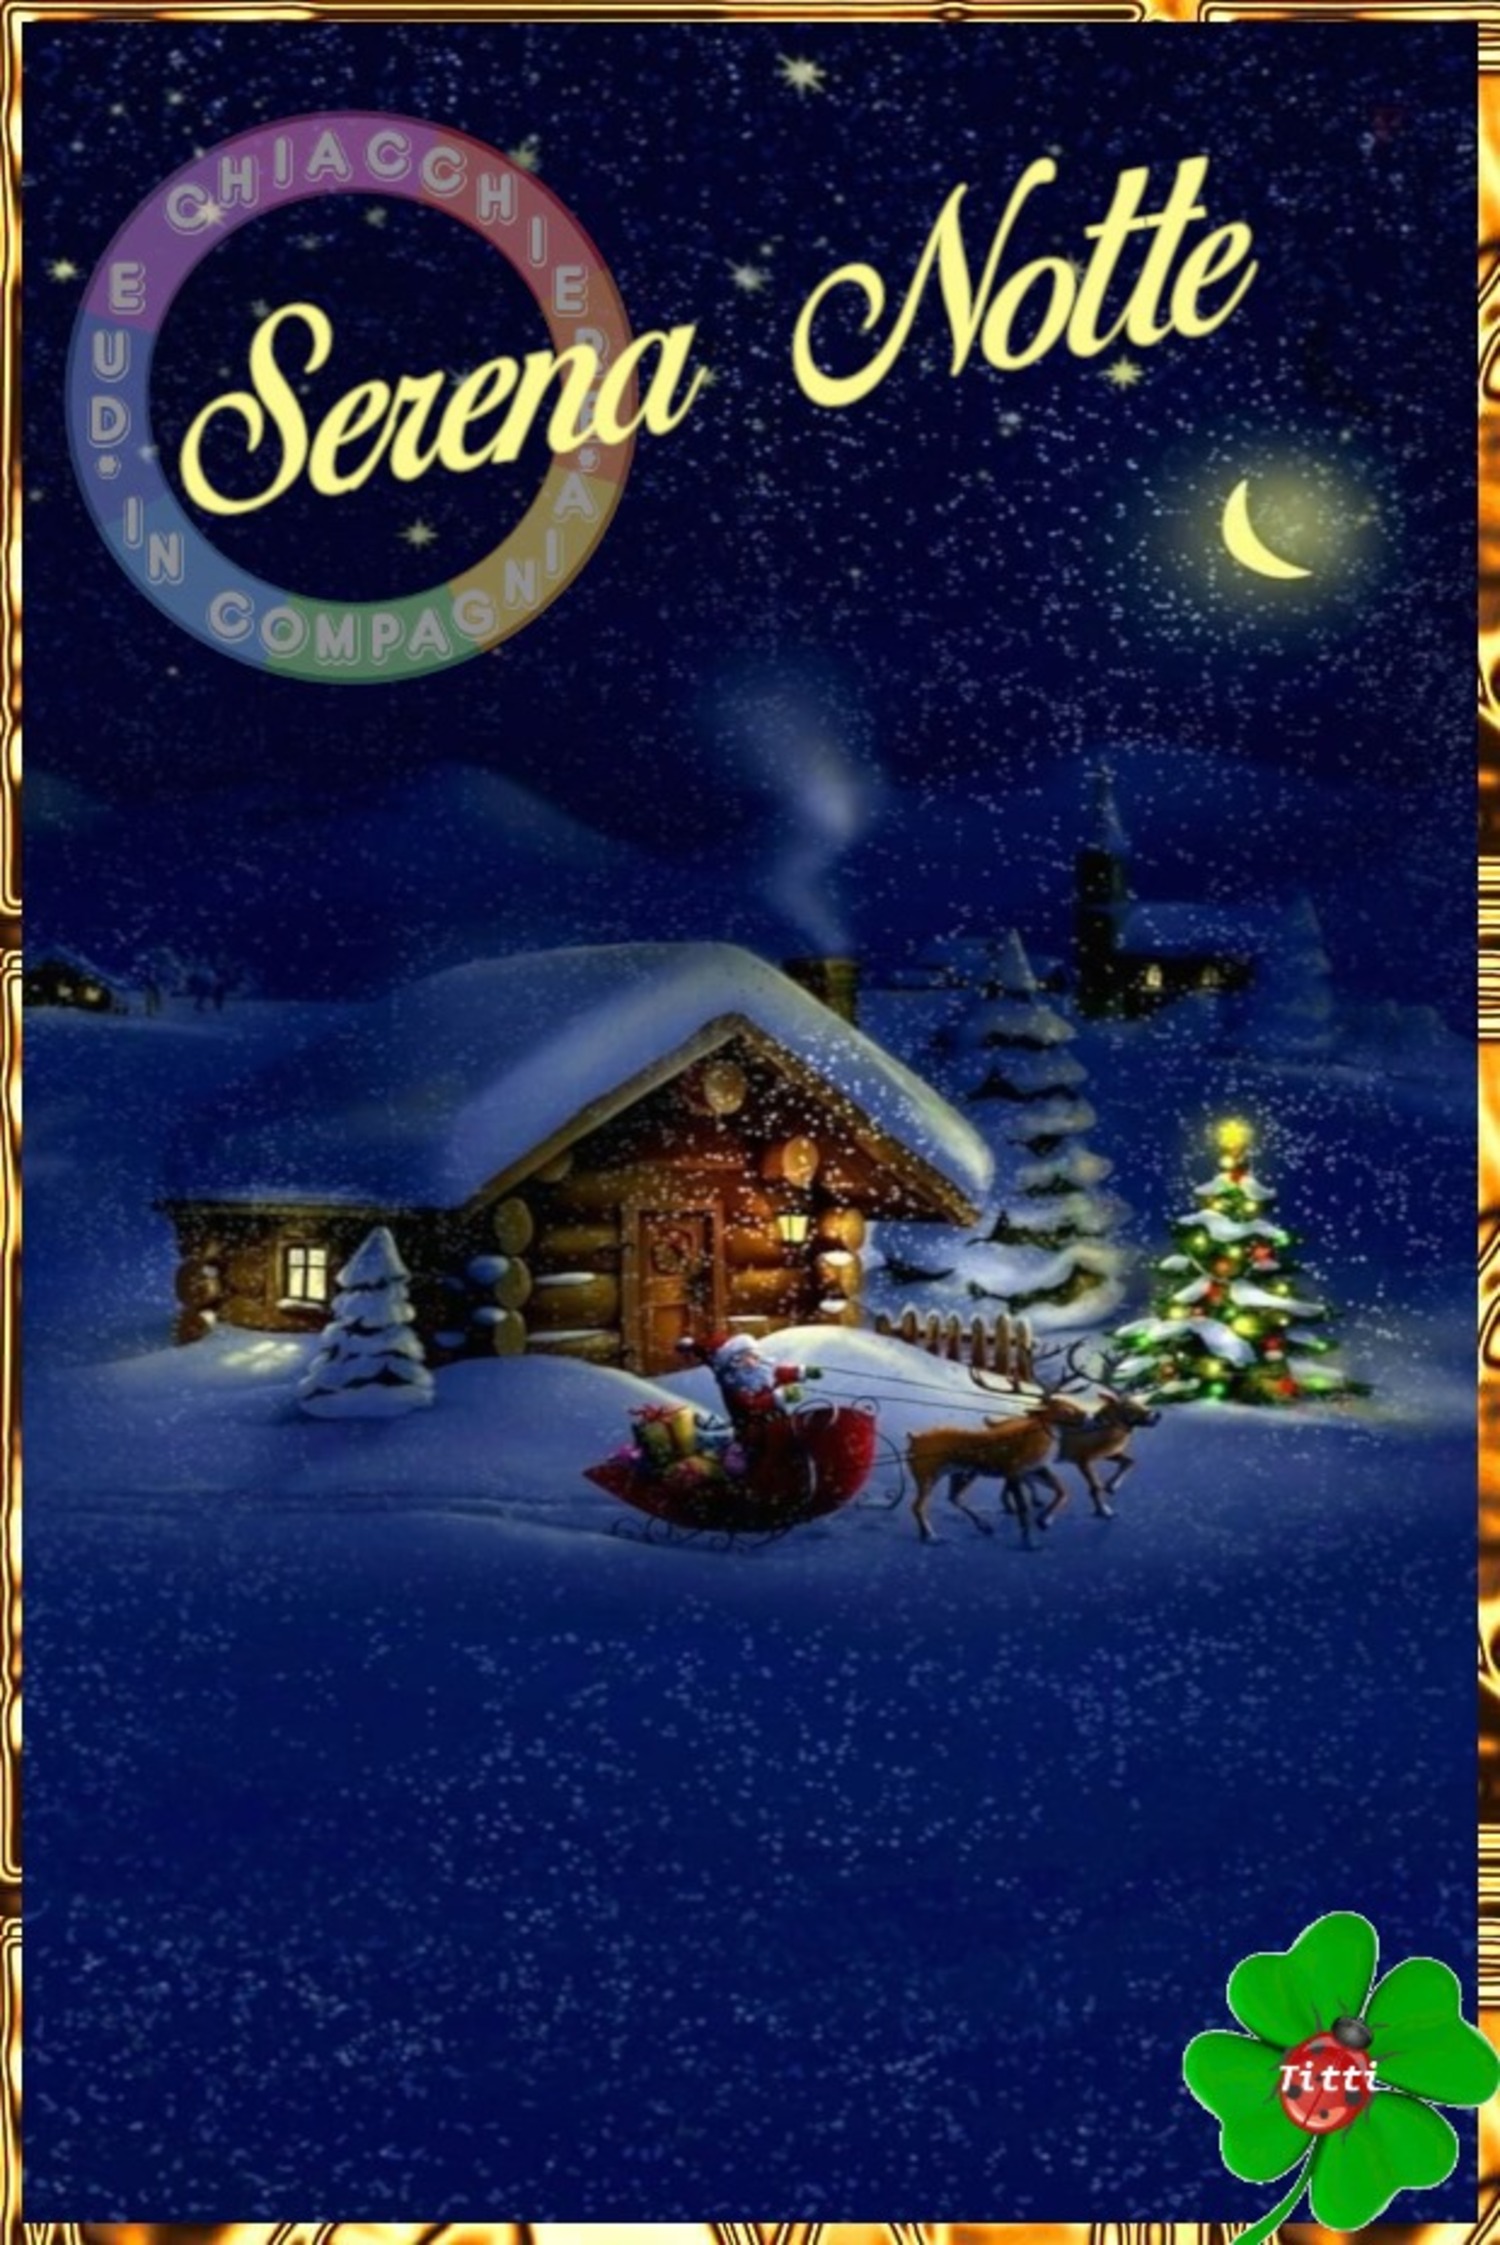 Serena Notte da Babbo Natale e le renne